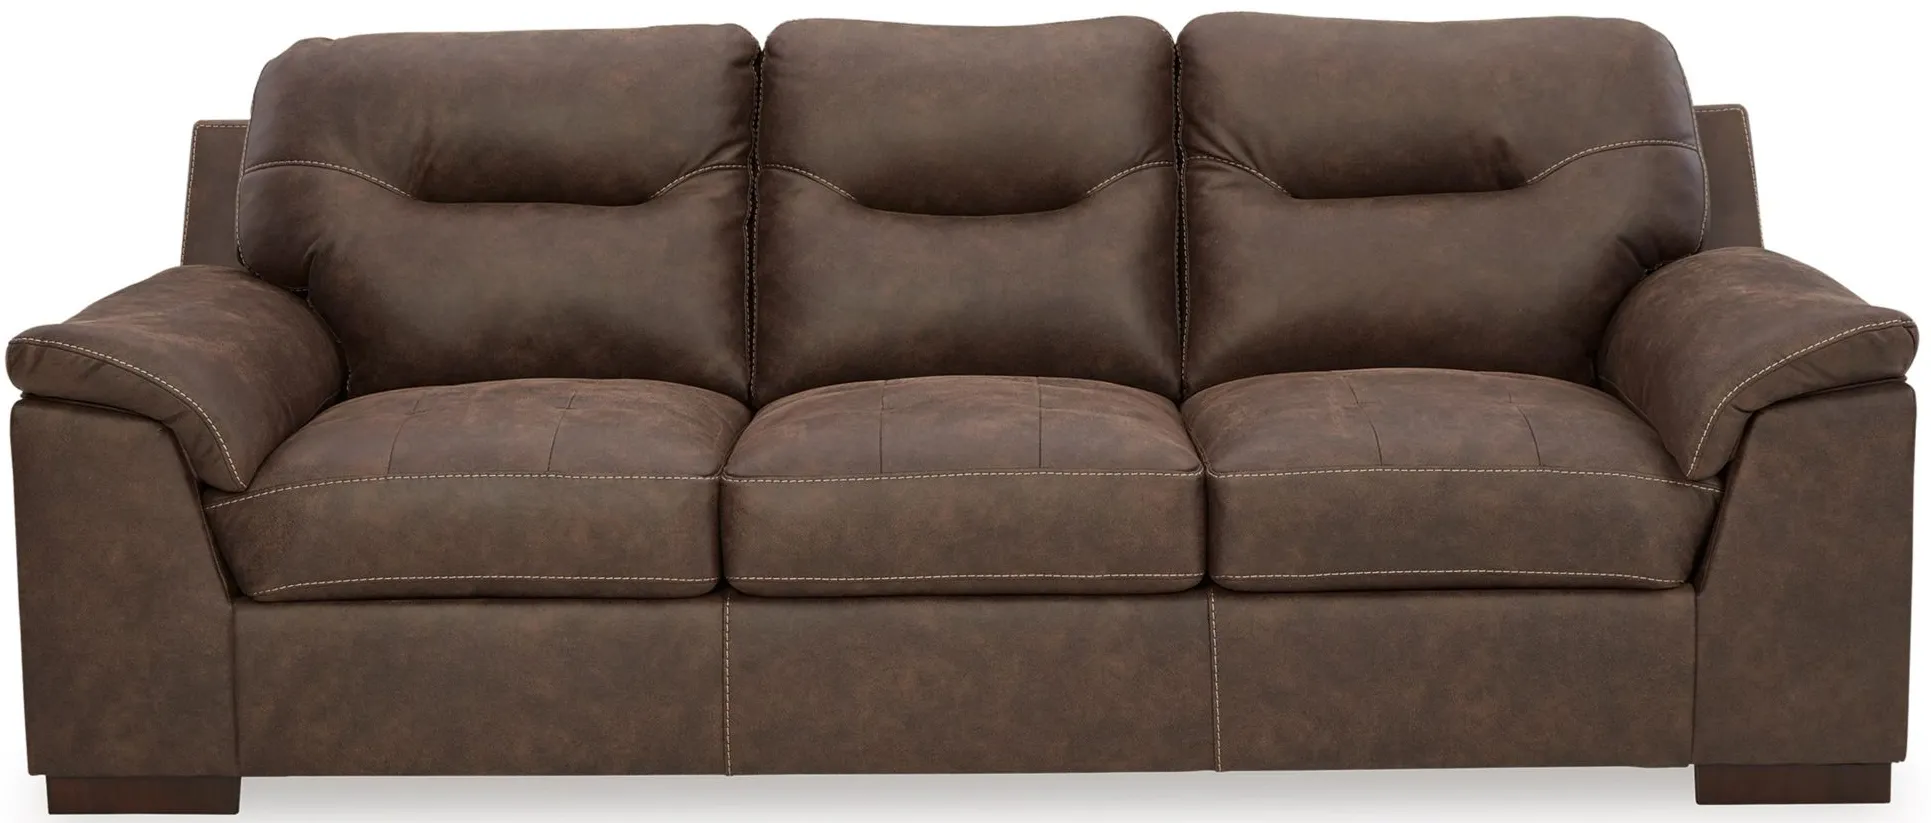 Maderla Sofa in Walnut by Ashley Furniture